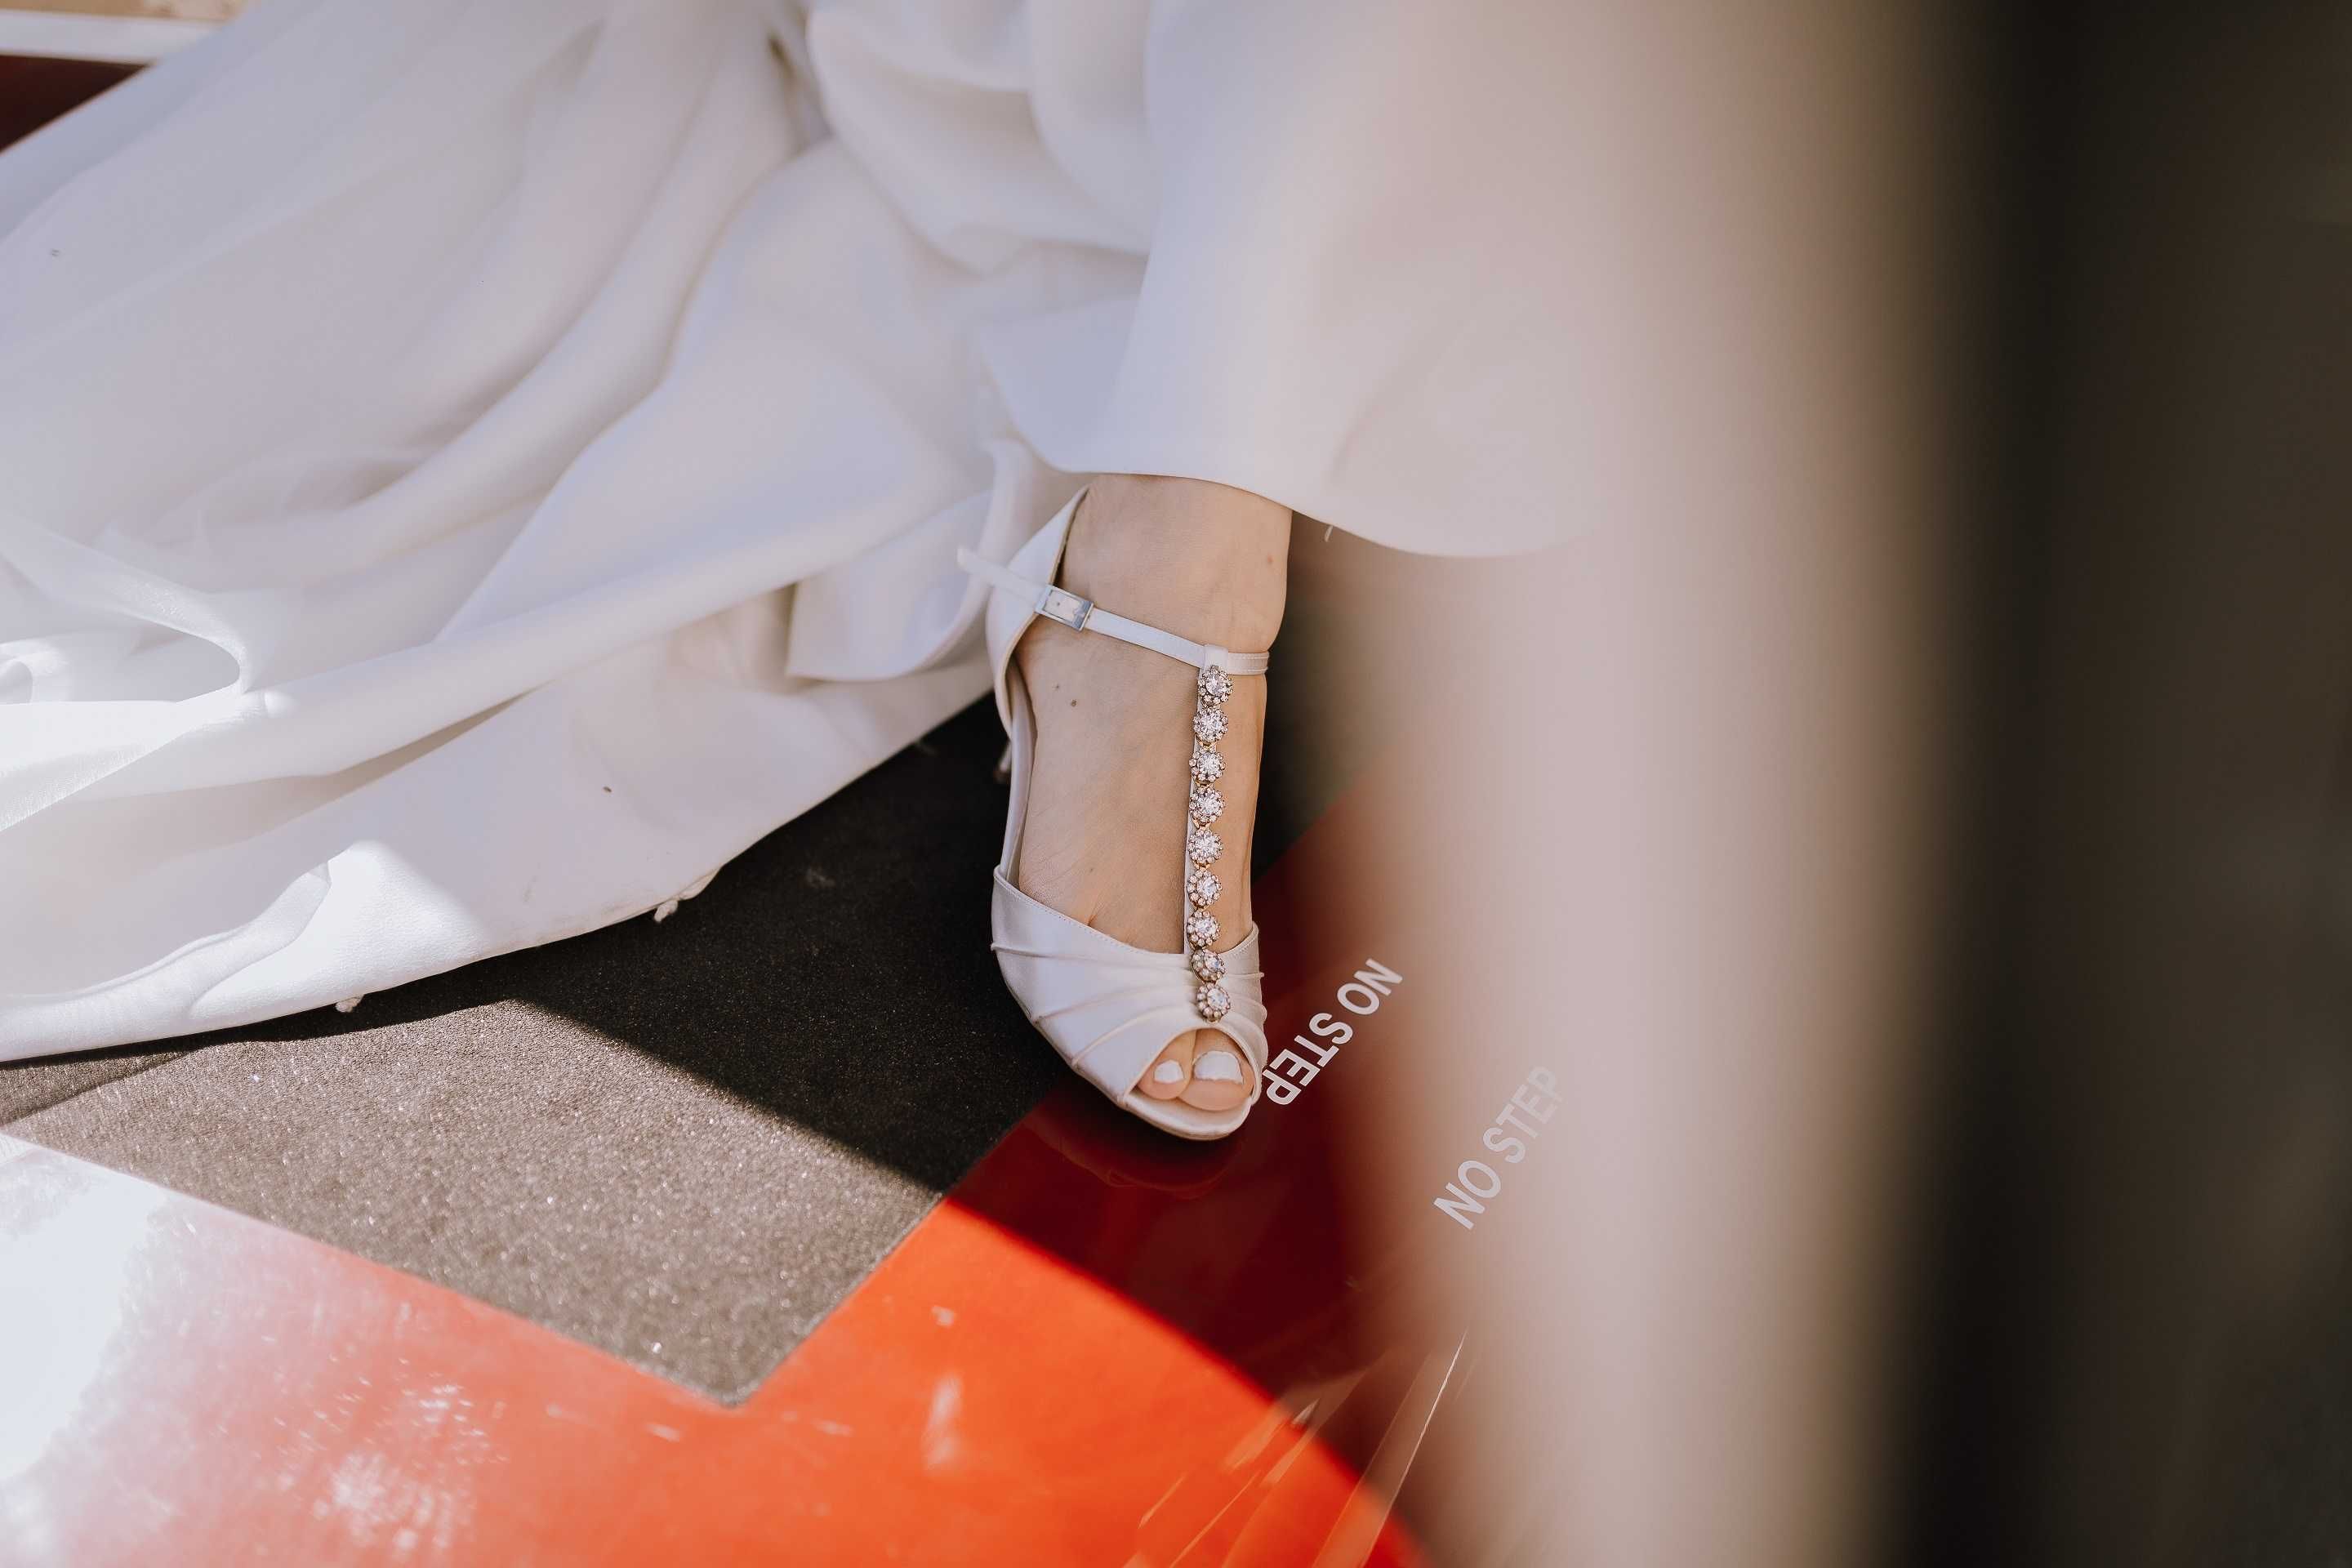 Булчински обувки на ток от сатен, размер 37 (бели сватбени сандали)